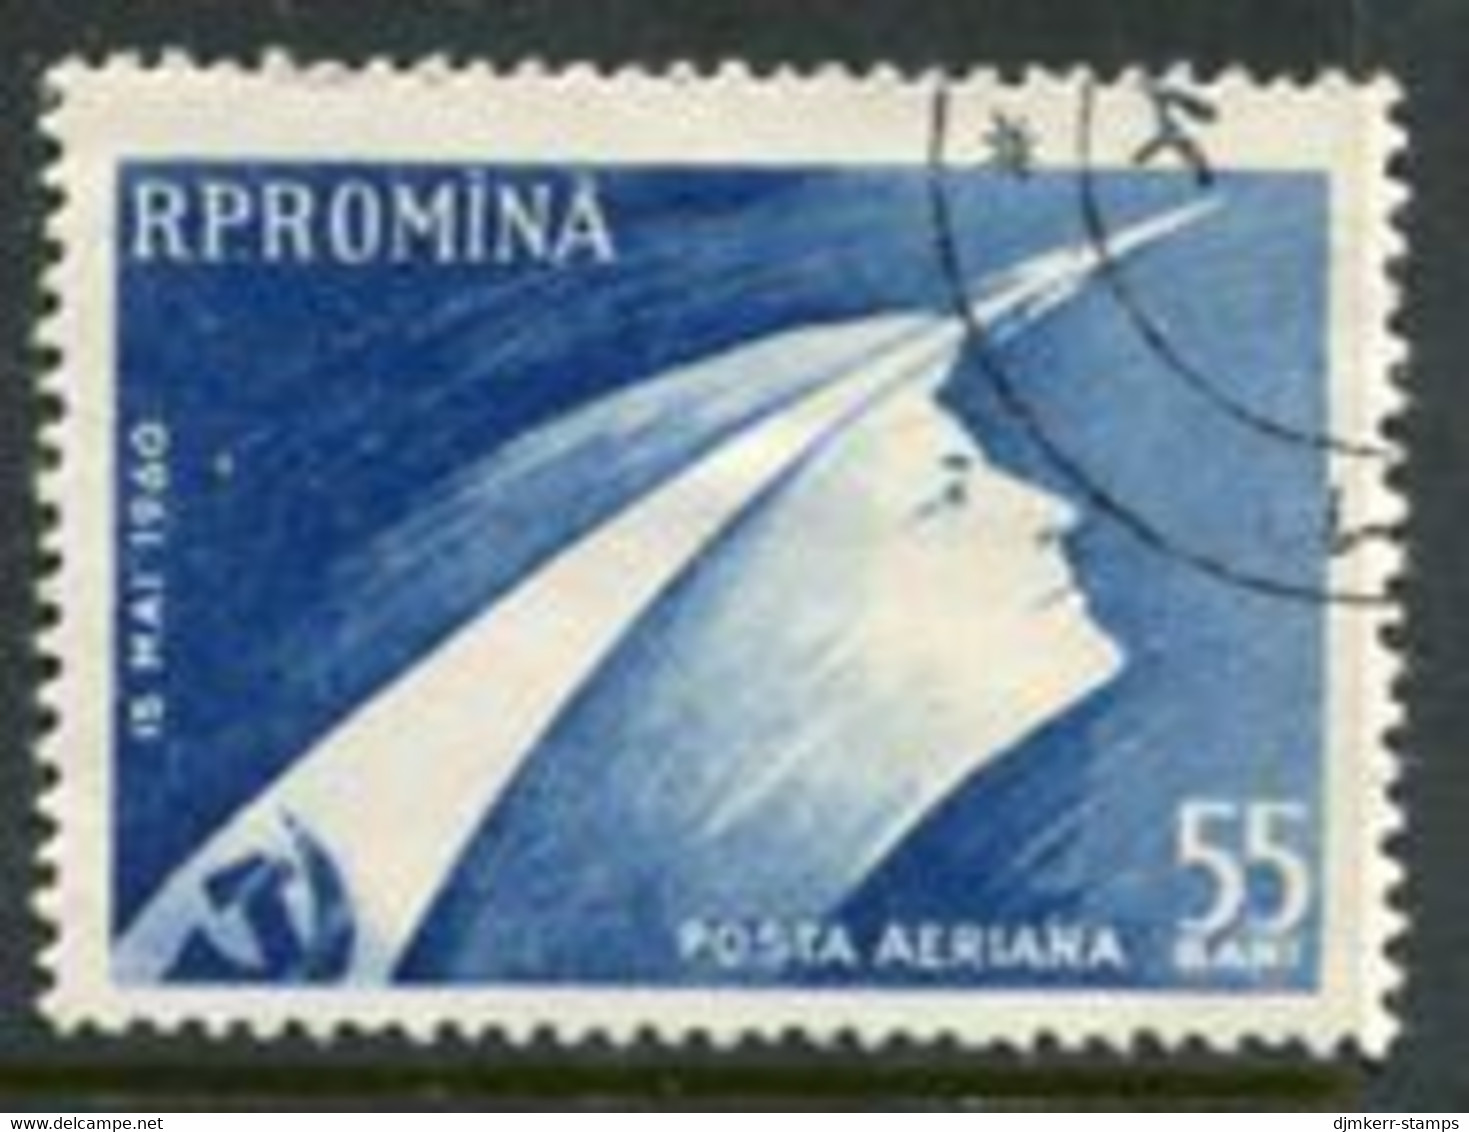 ROMANIA 1960 Launch Of Vostok Spacecraft Used.  Michel 1899 - Usati